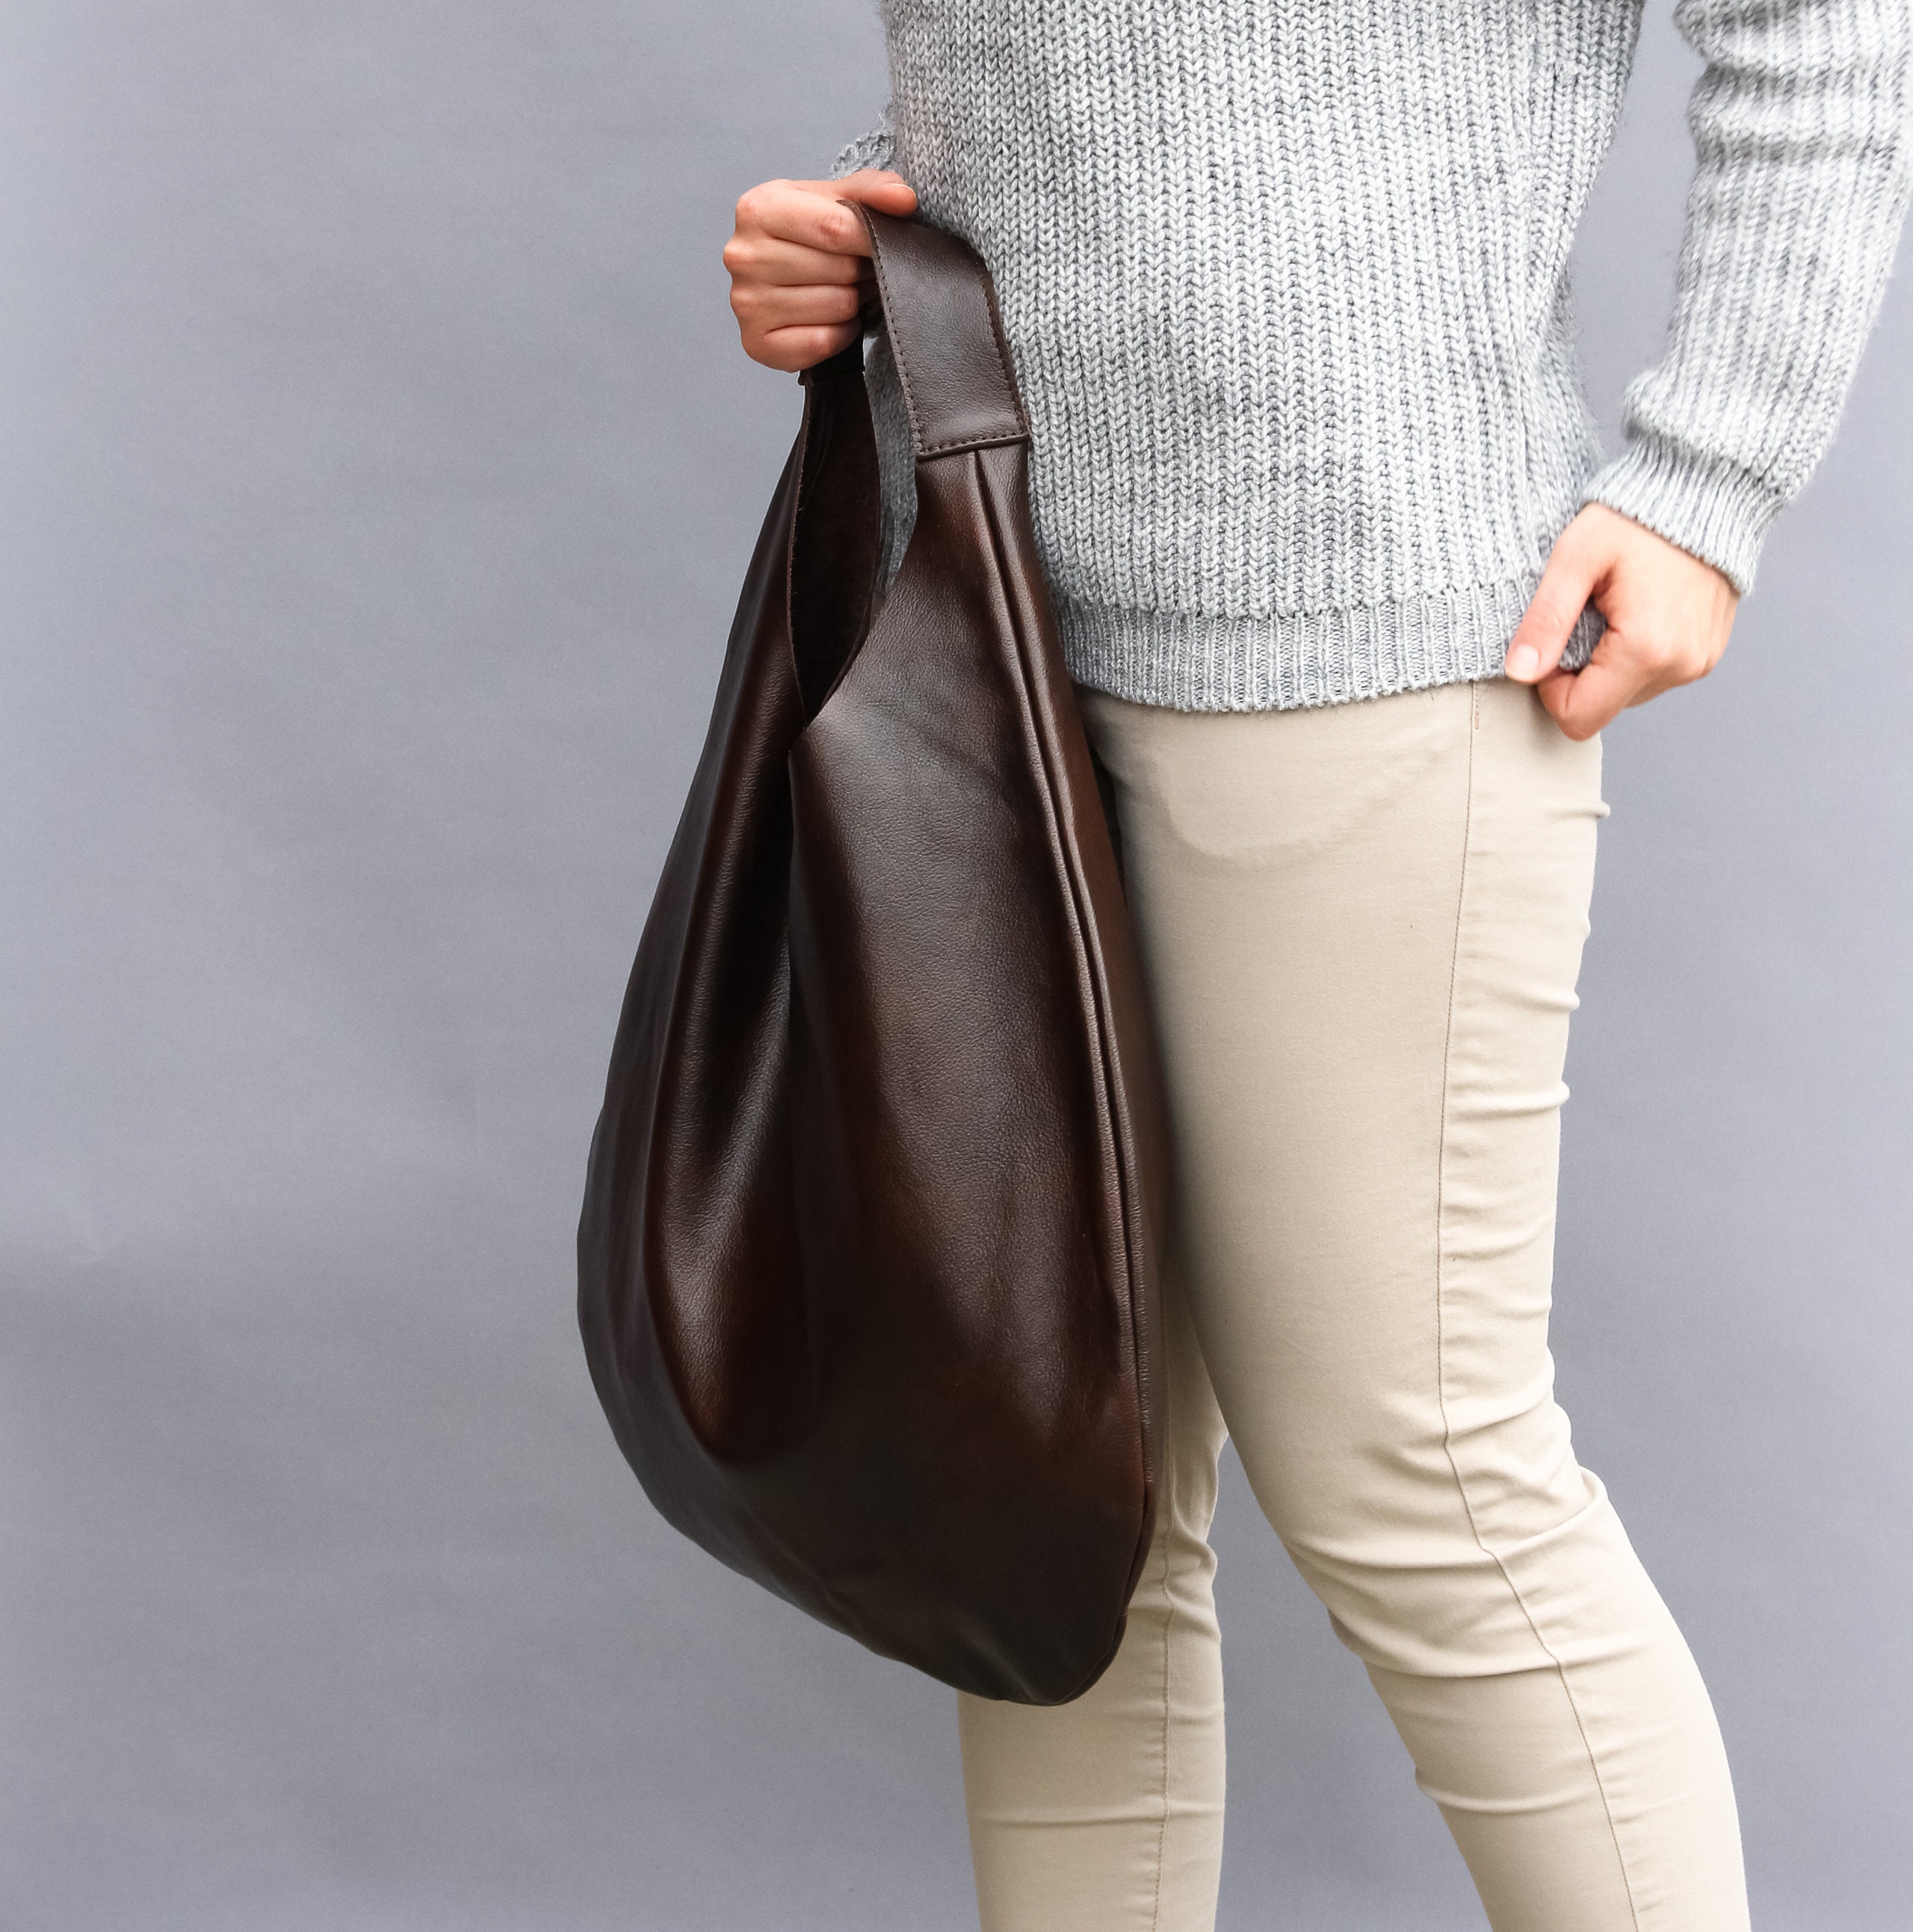 BROWN Oversize Shoulder Bag LEATHER HOBO Bag Everyday | Etsy